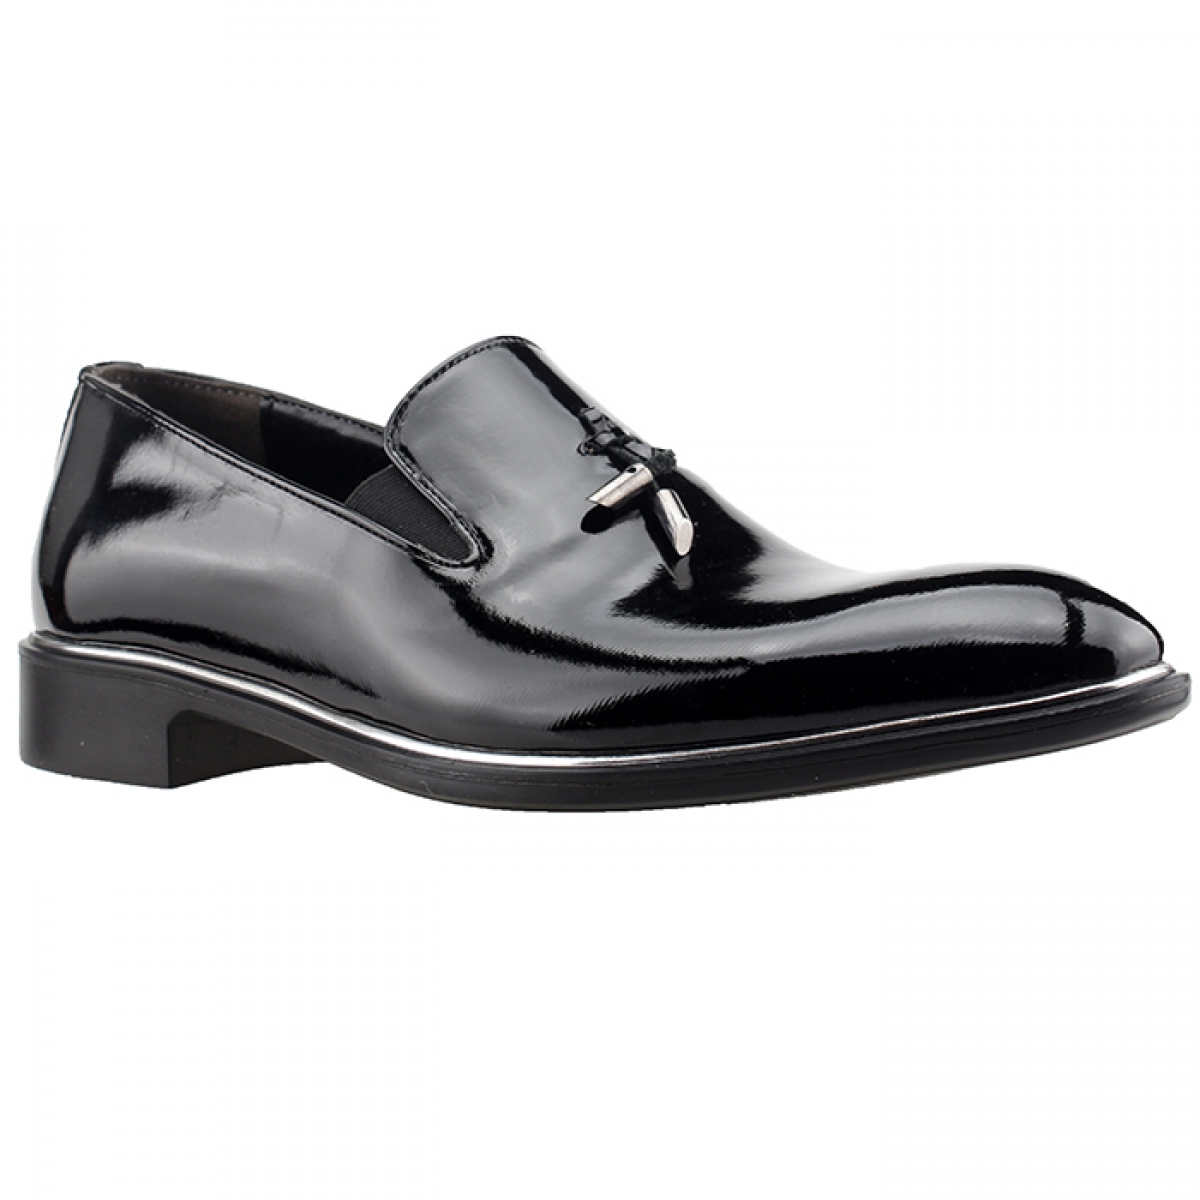 Flo Tamboga N560 Günlük Abiye Damatlık Klasik Erkek Ayakkabı SİYAH. 2